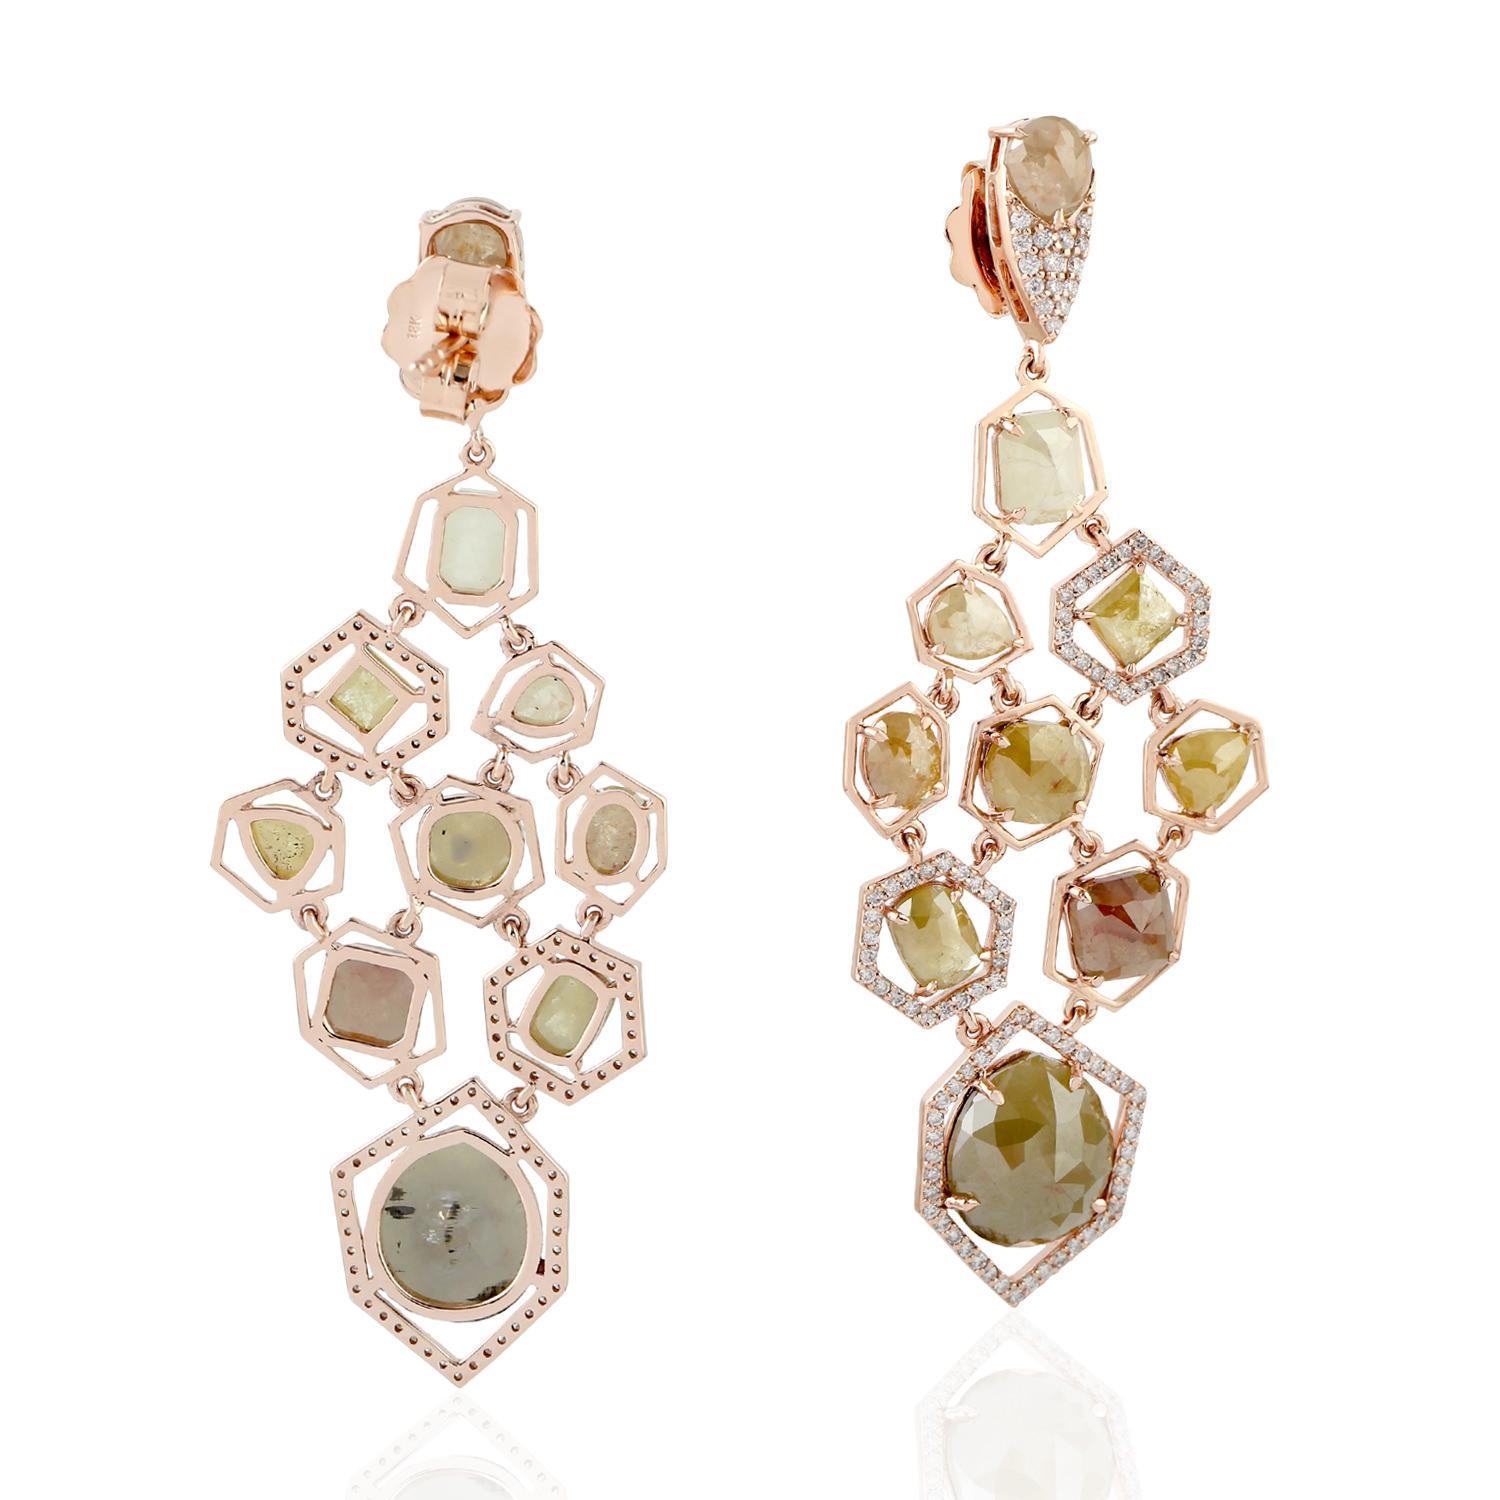 Contemporary Fancy Slice Diamond 18 Karat Gold Web Earrings For Sale